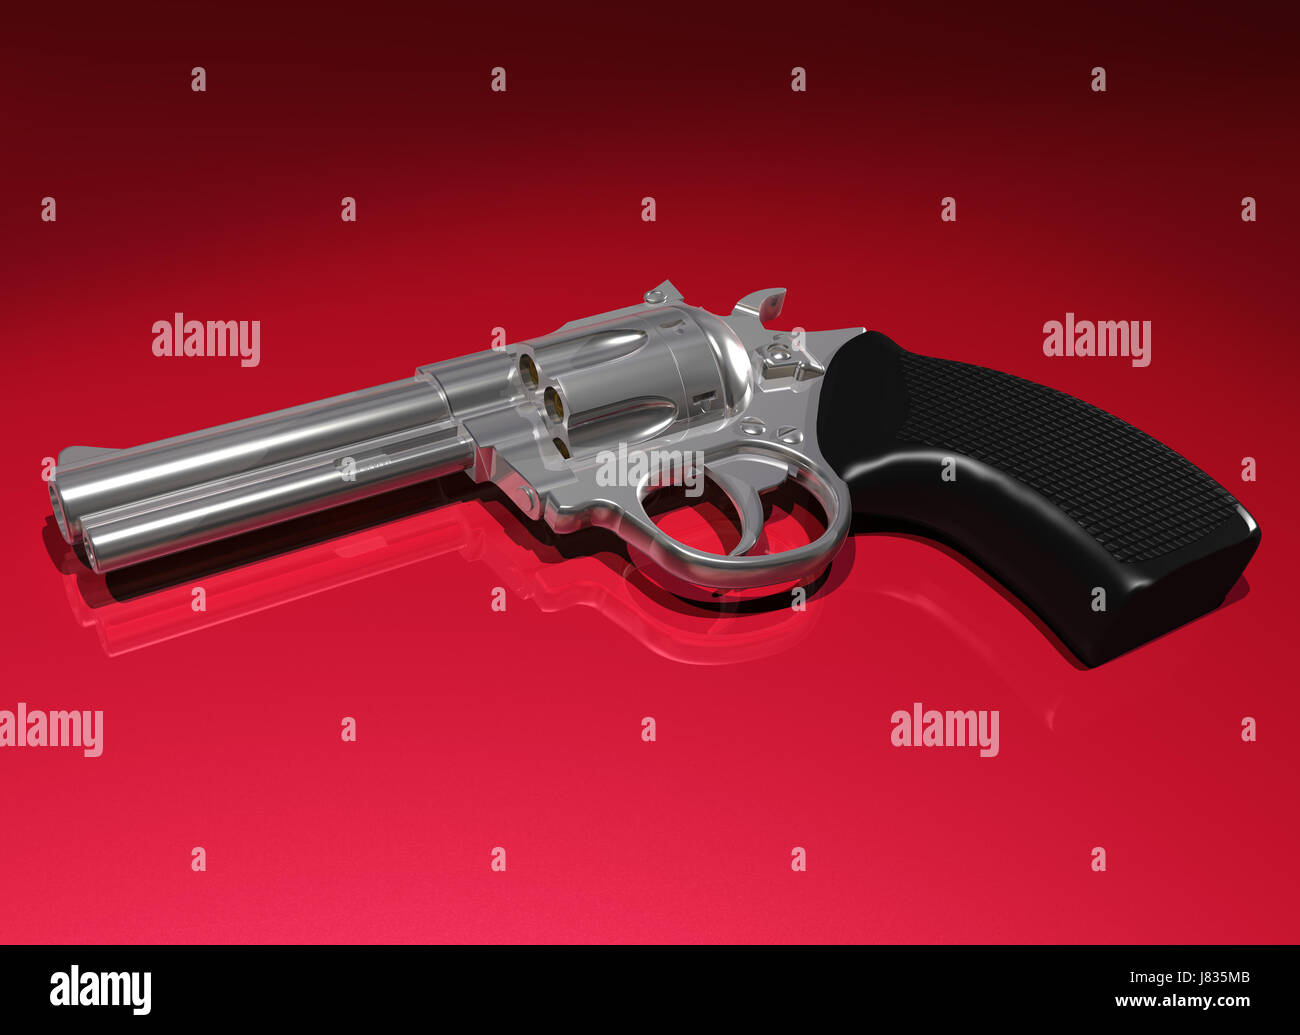 Metal plateado revolver barril pistola disparo del arma objeto rojo plata ilustración Foto de stock